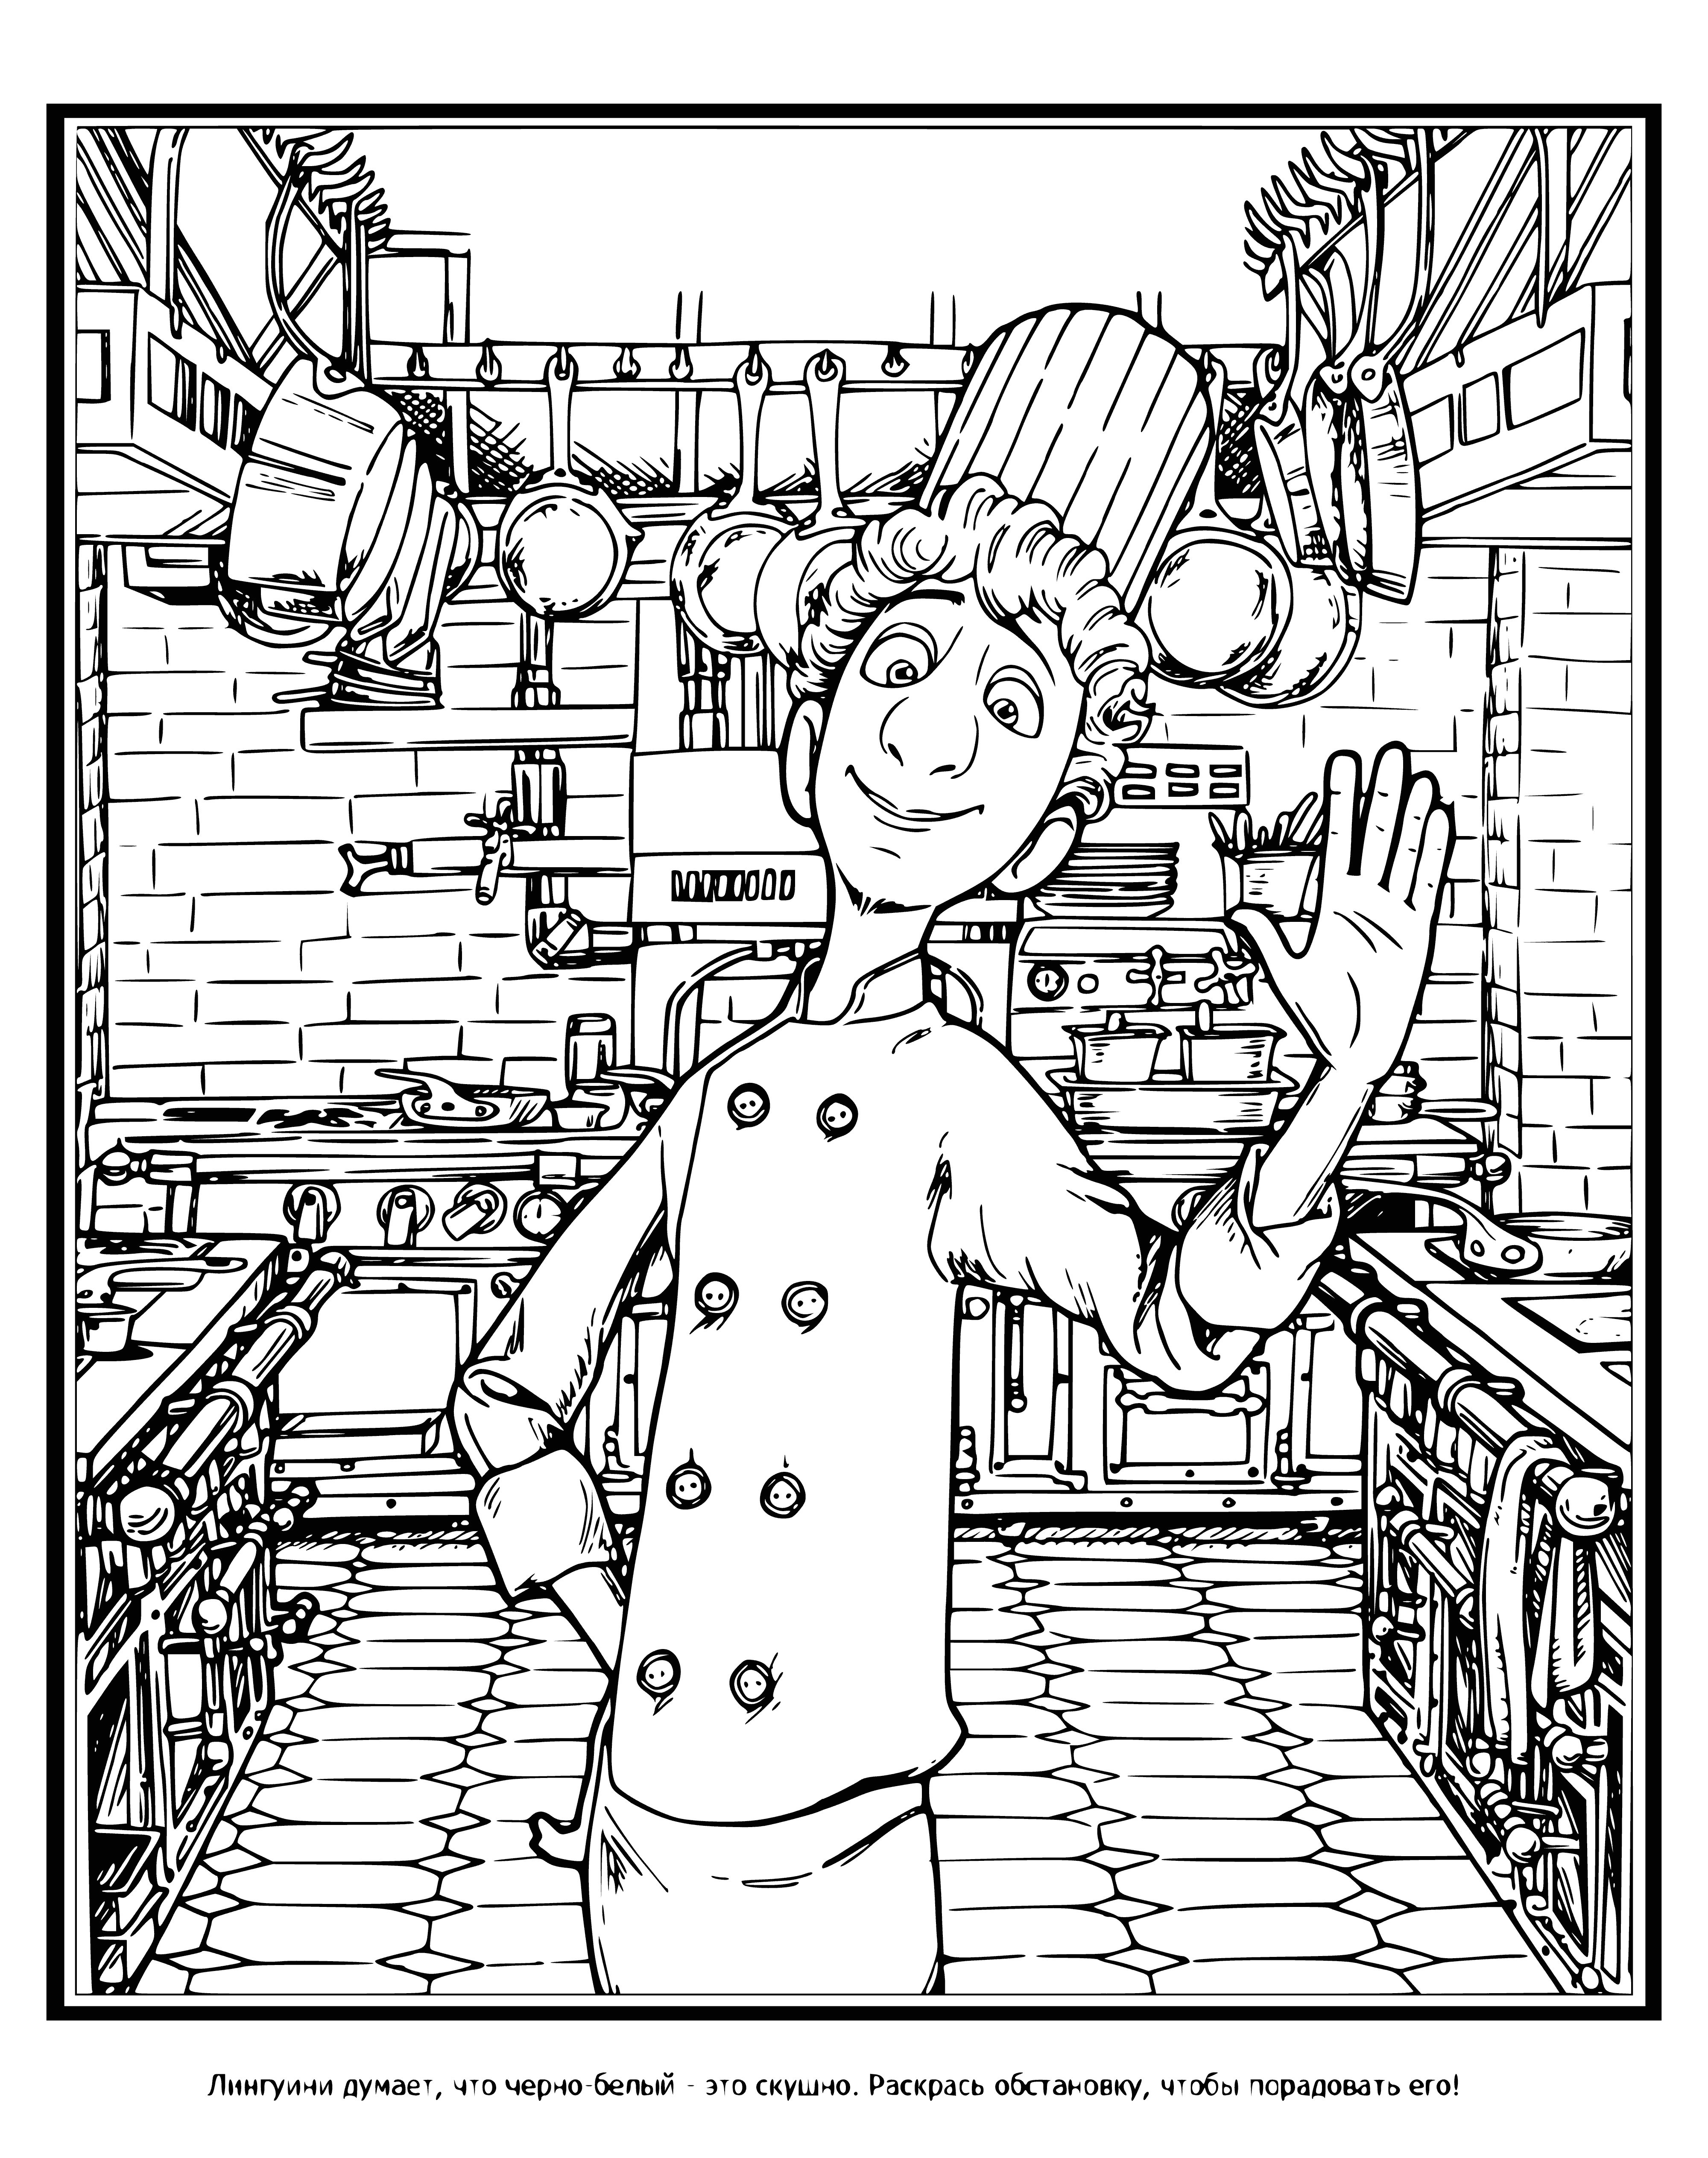 Chef Linguini coloring page